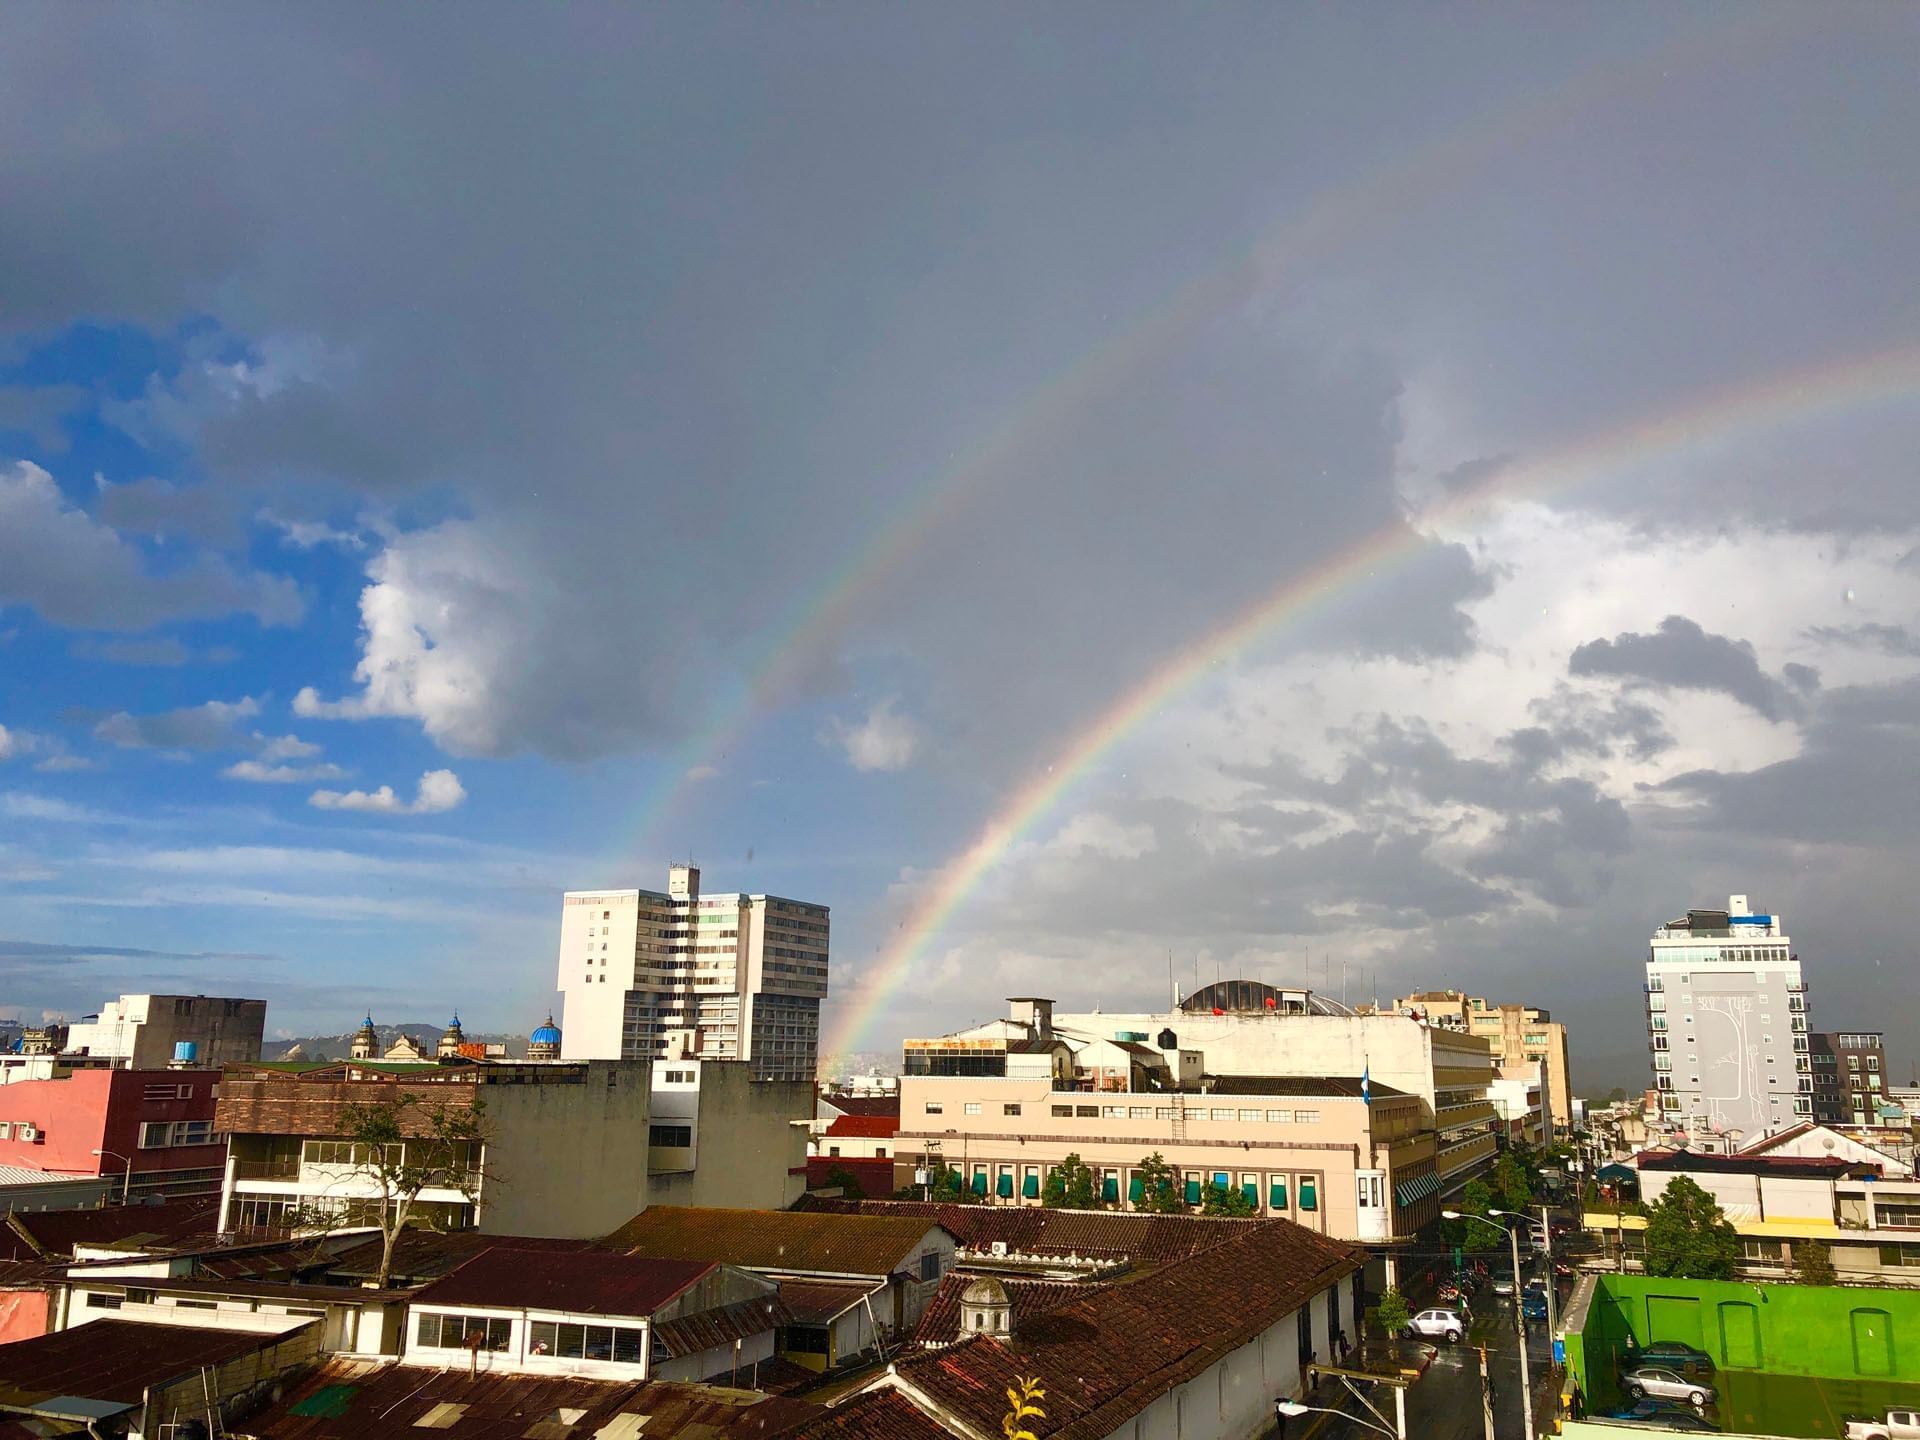 2 rainbows over the Centro Historico near Tikal Futura Hotel